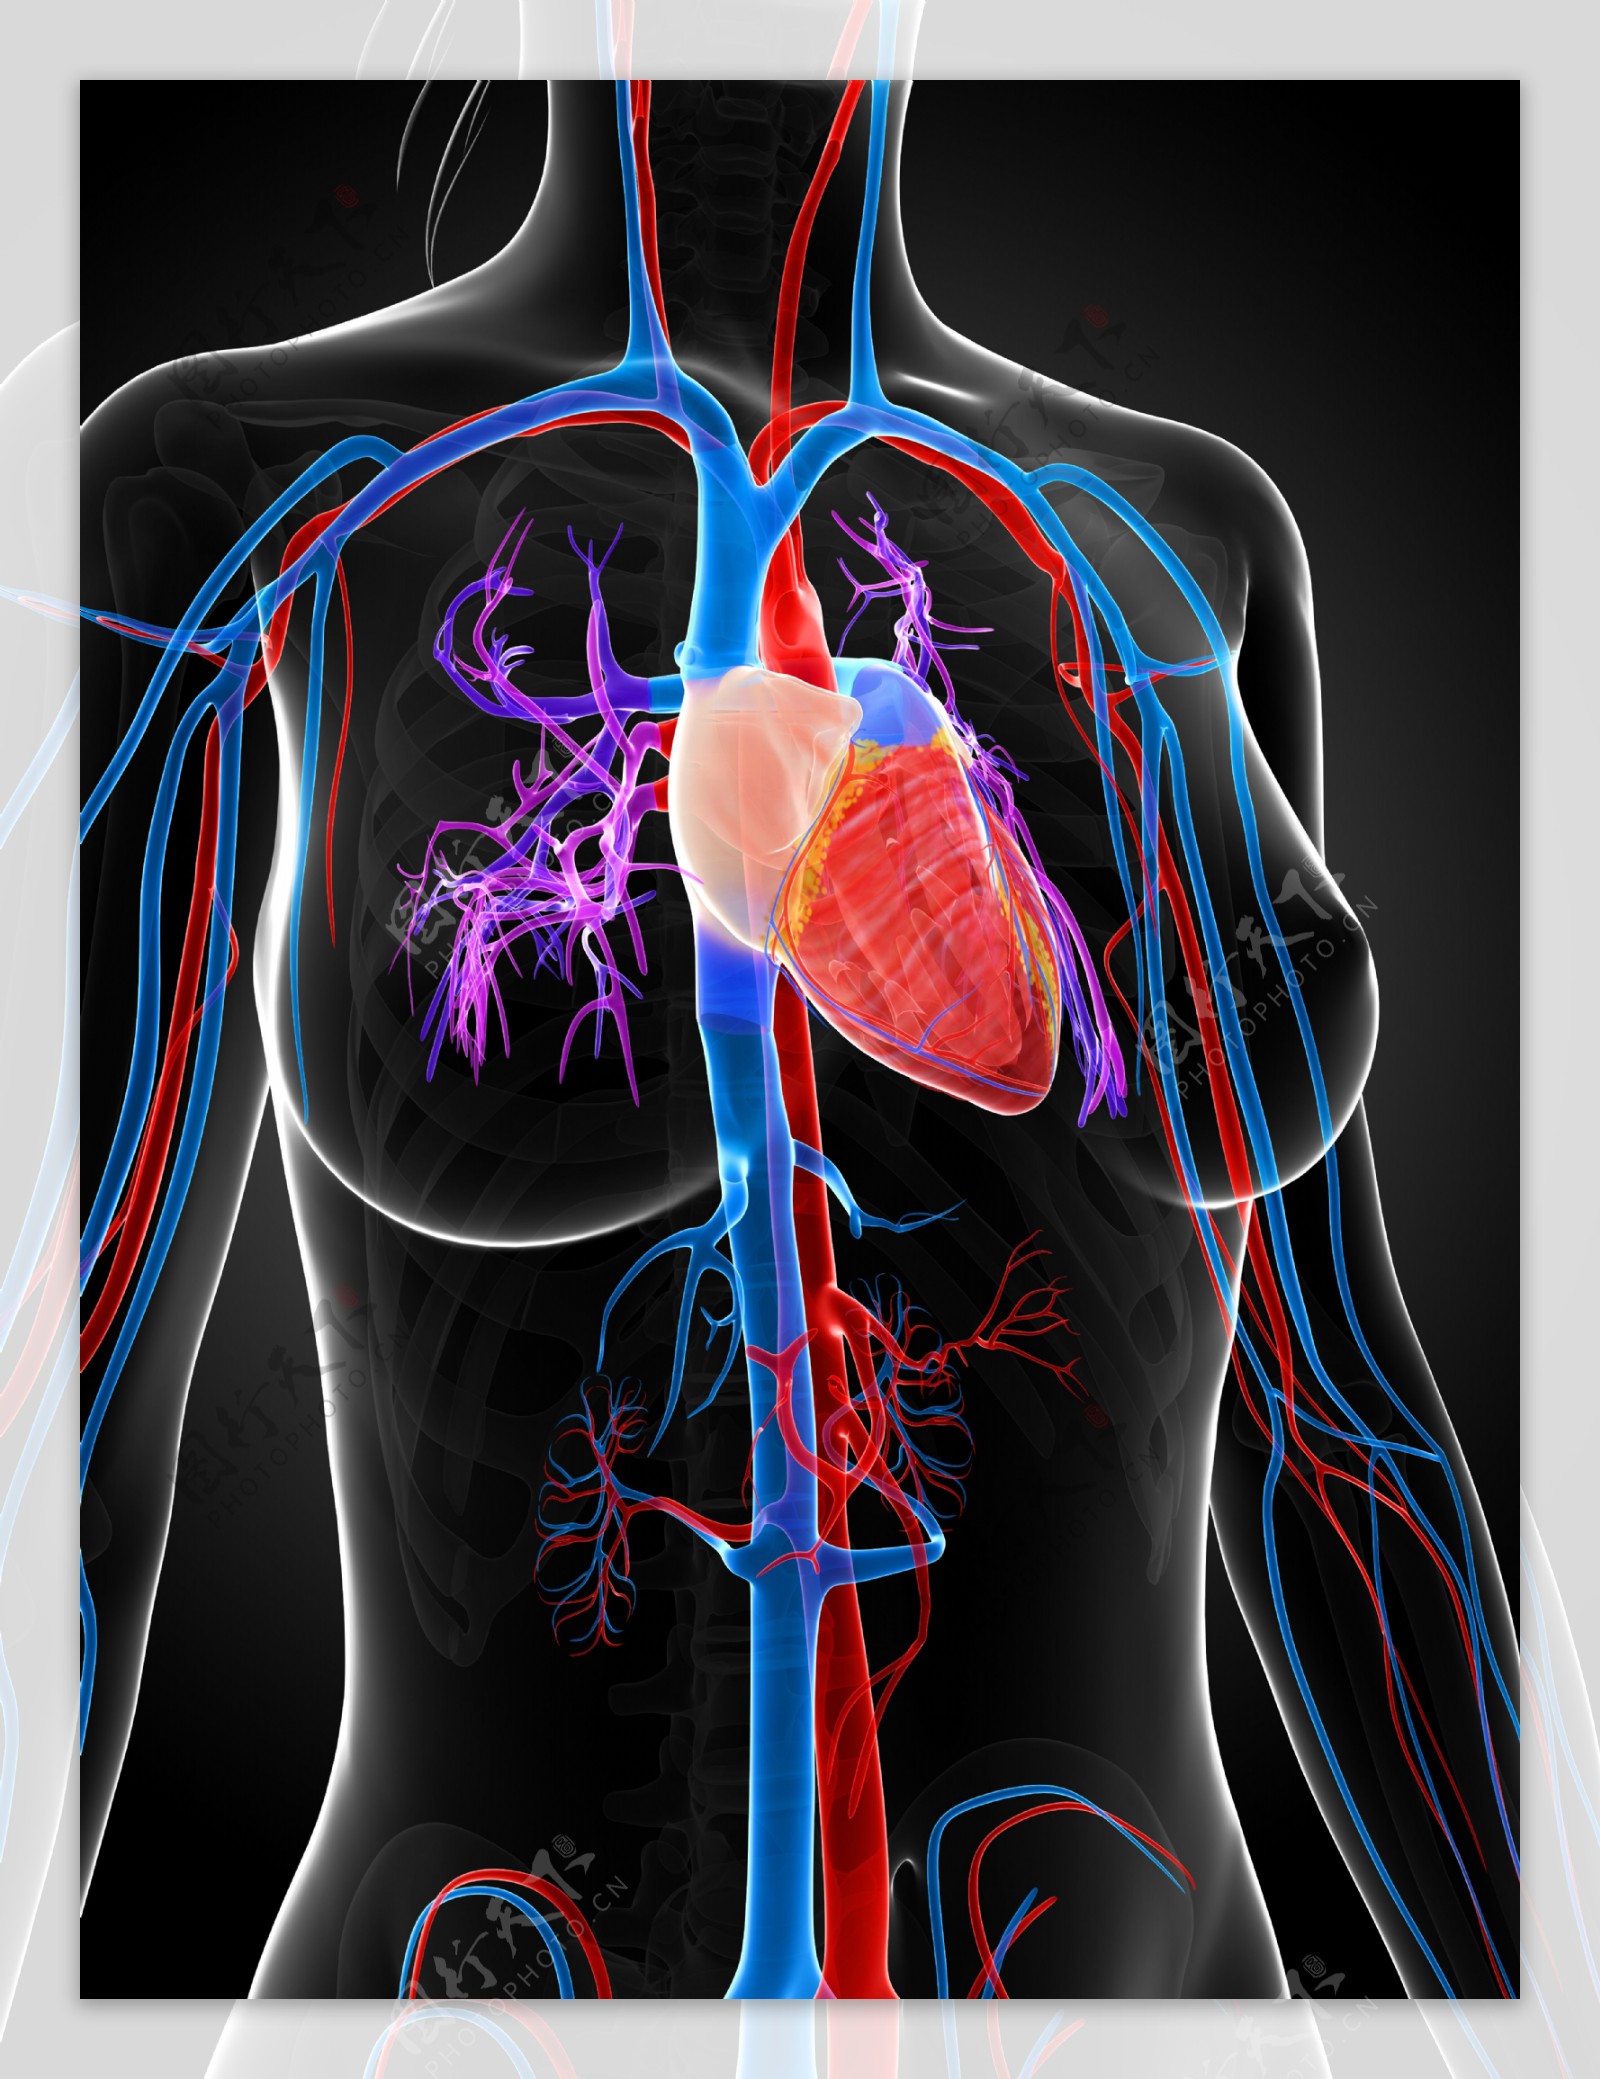 心脏人体器官图片